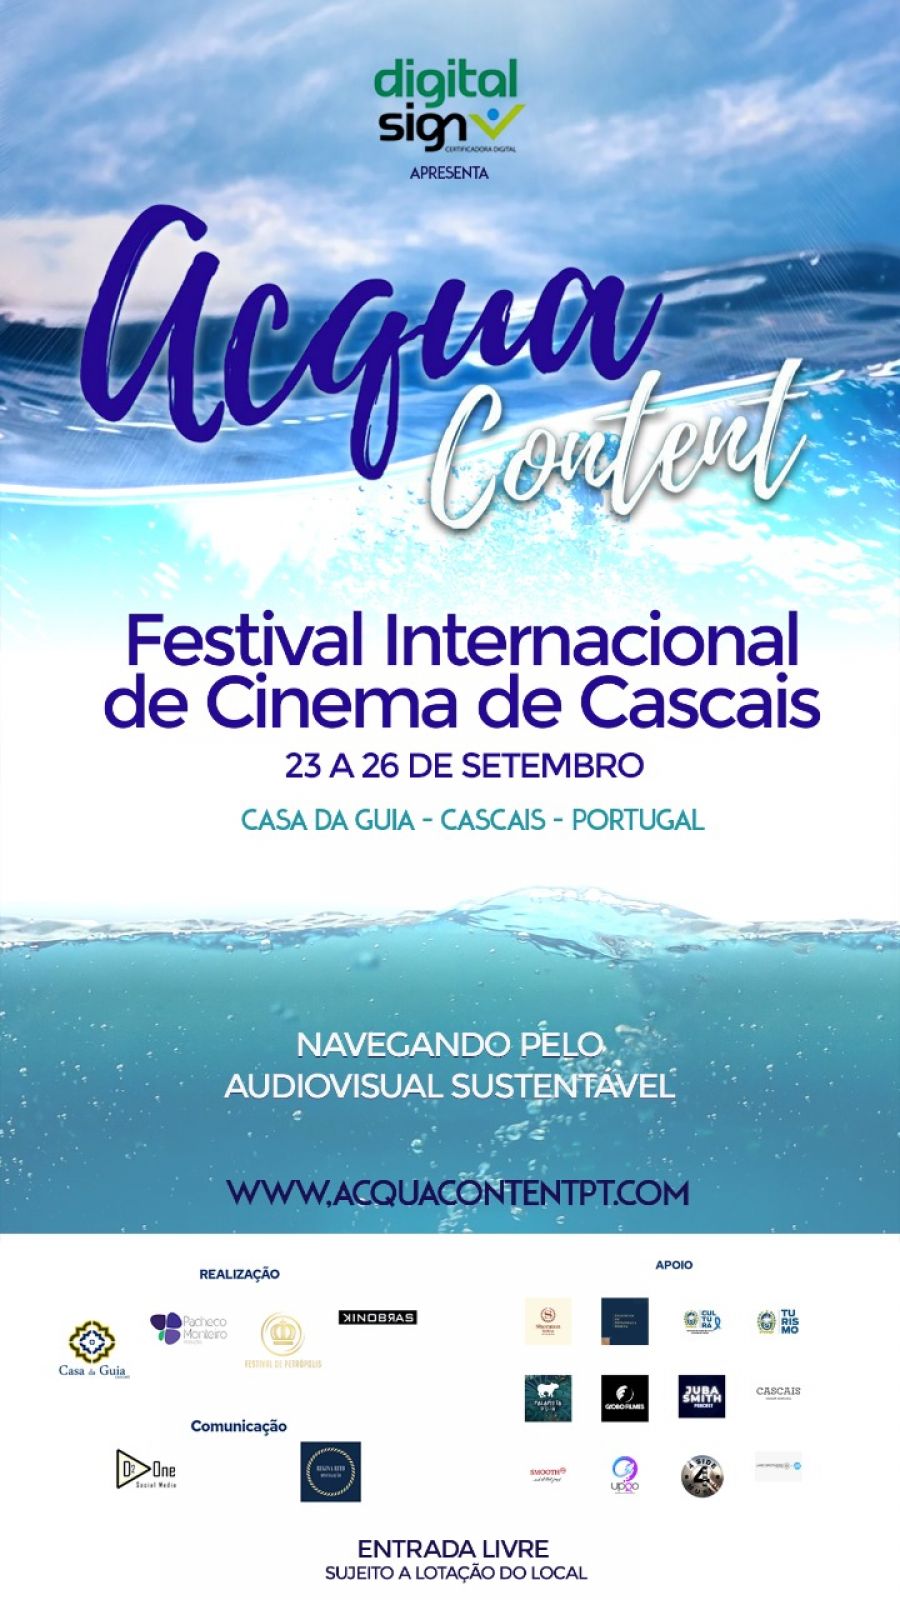 Acqua Content - Festival Internacional de Cinema de Cascais